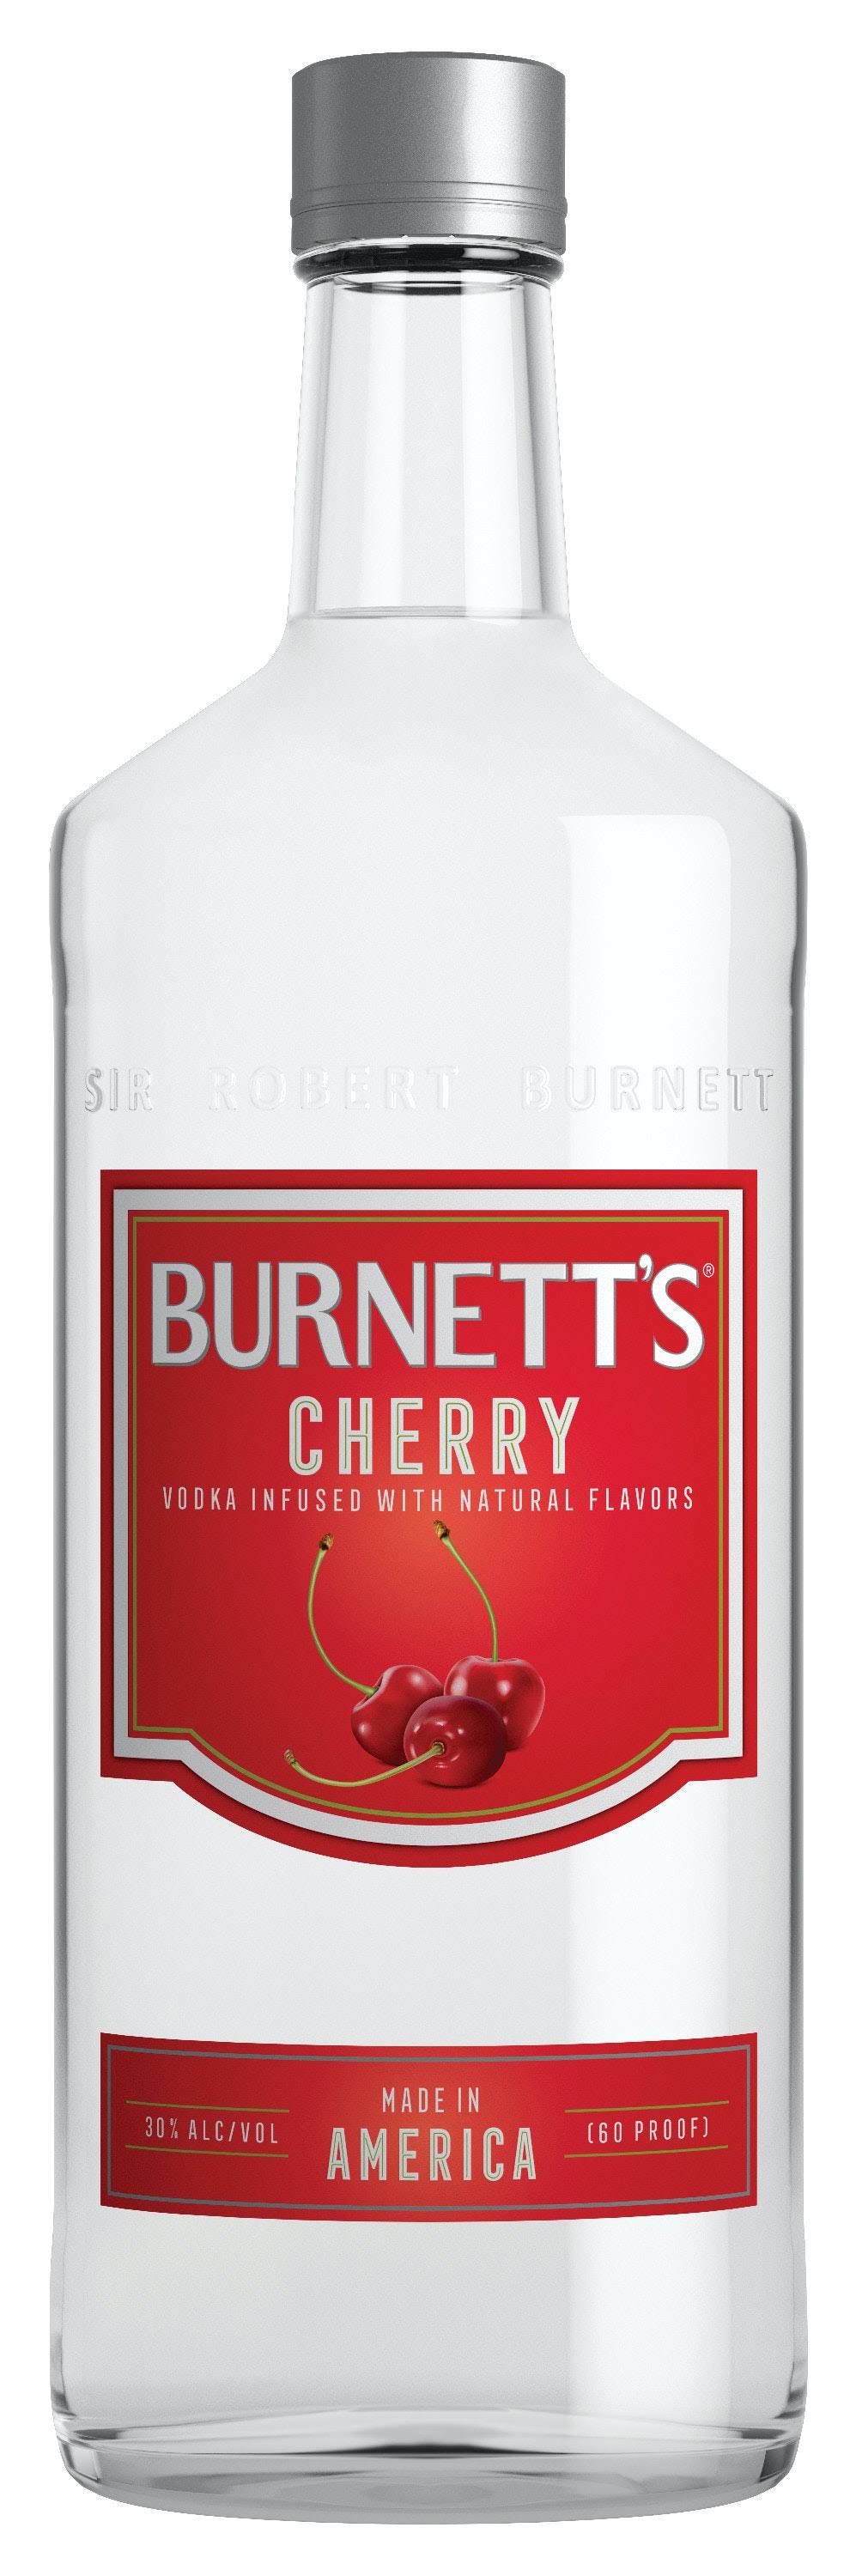 Burnett's Cherry Flavored Vodka